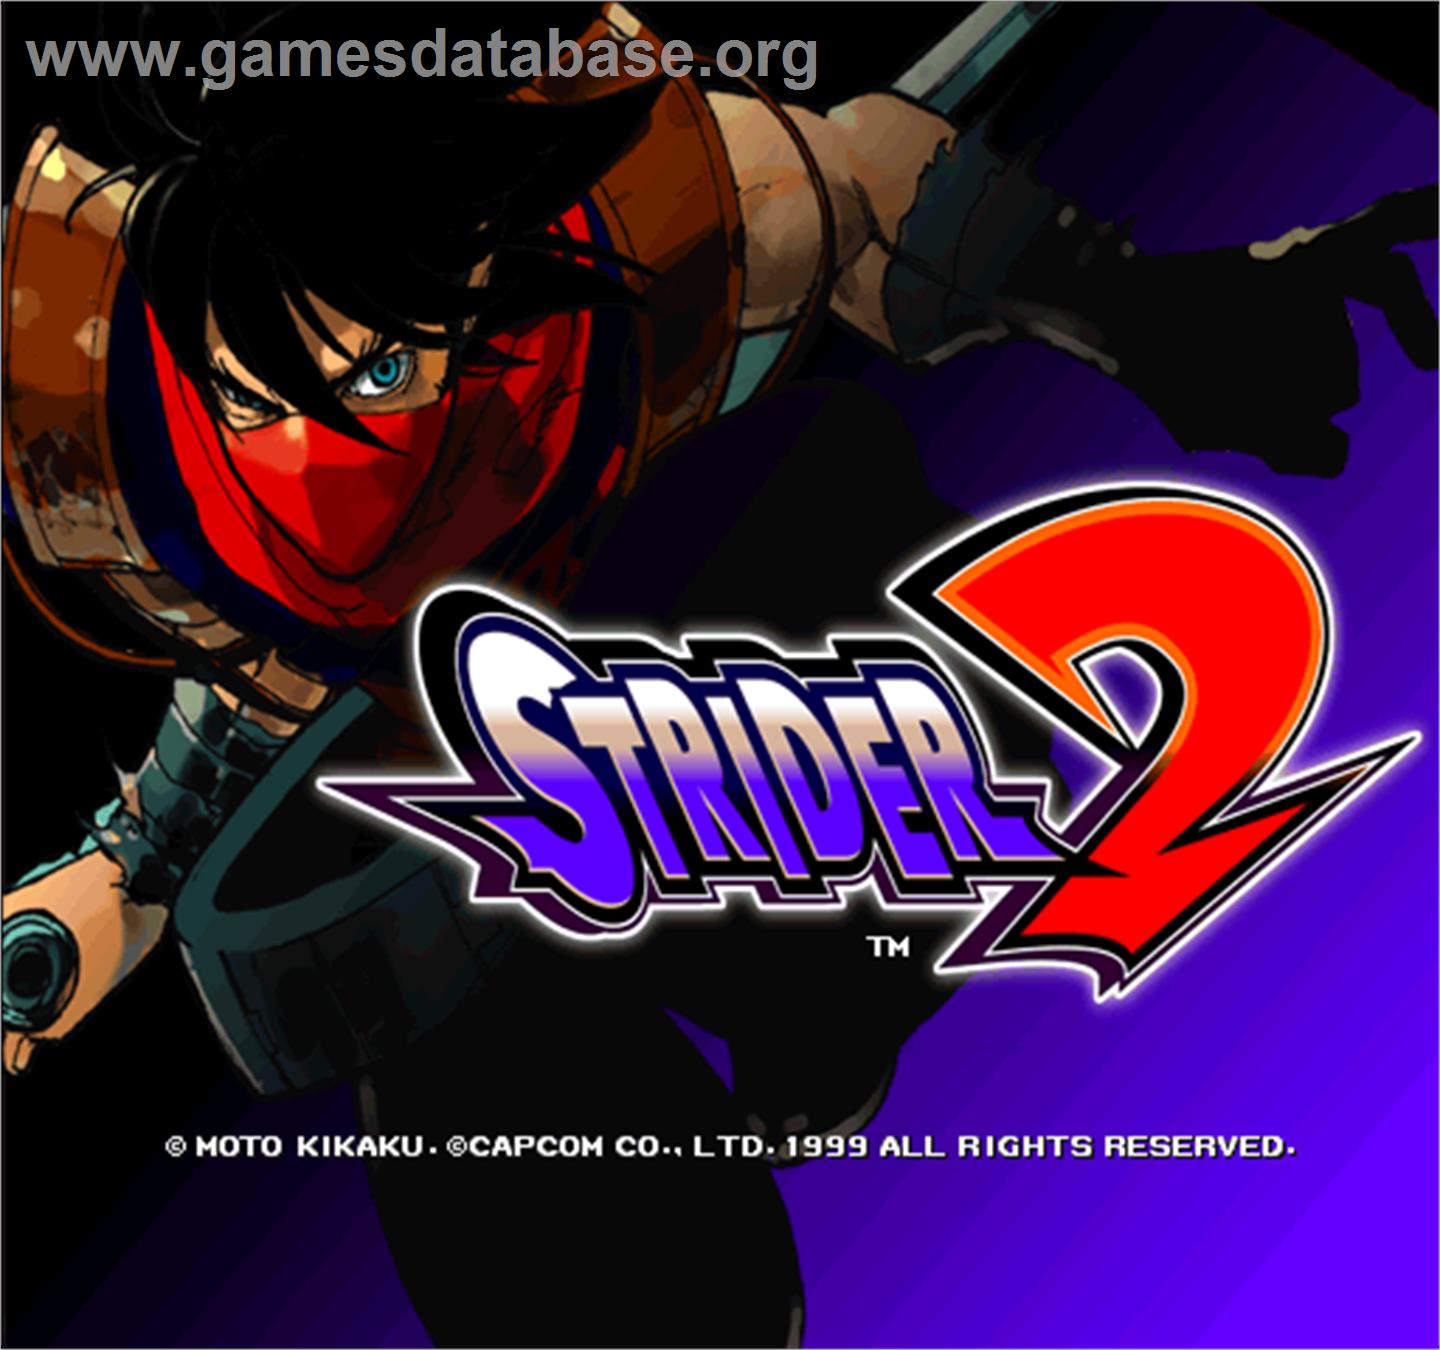 Strider 2 - Arcade - Artwork - Title Screen